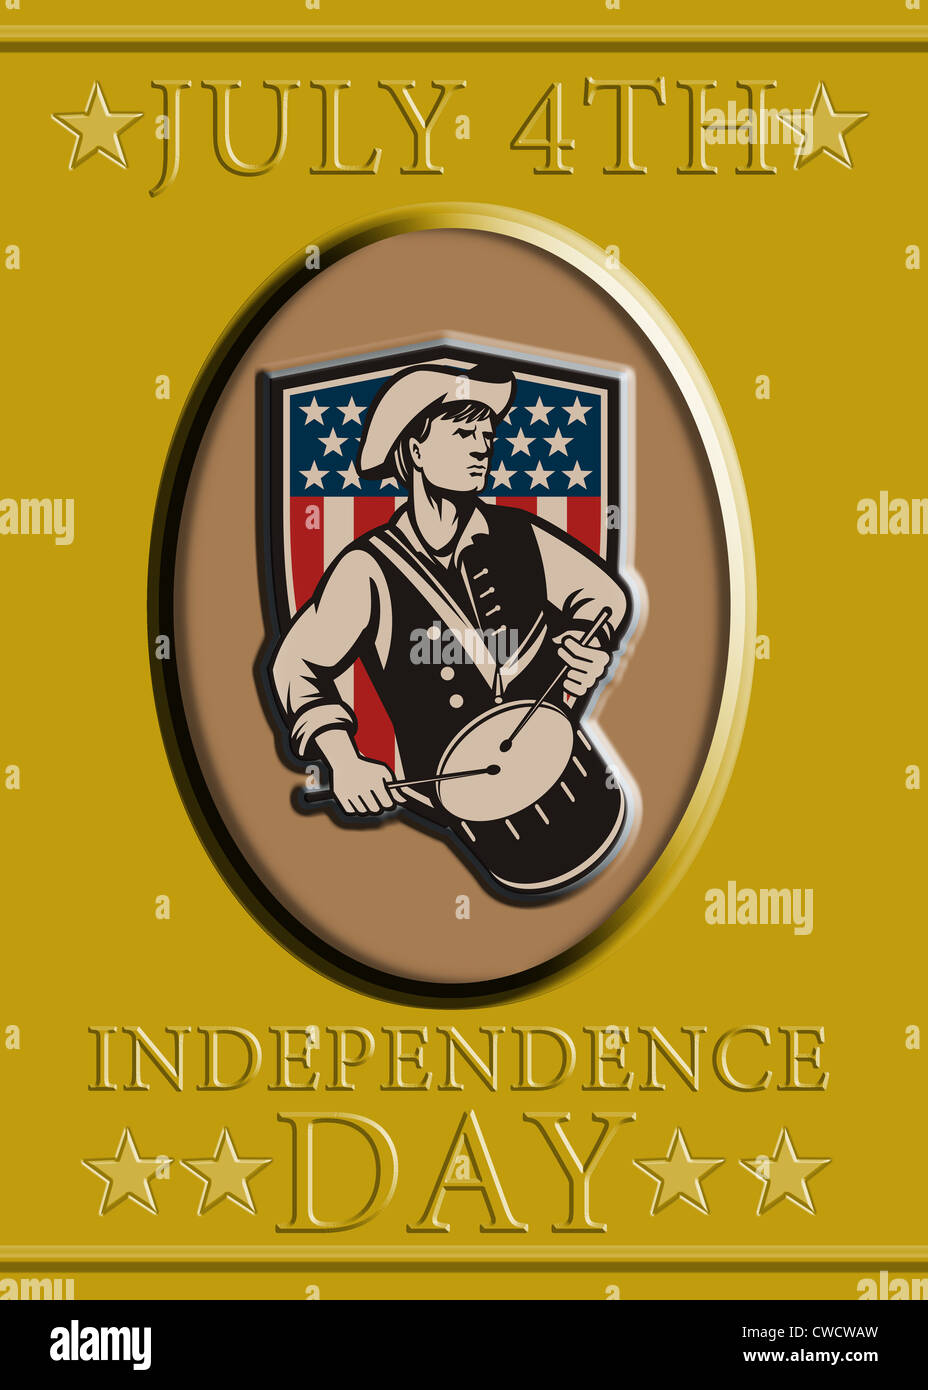 Carte de vœux de l'affiche illustration d'un soldat révolutionnaire minuteman patriot batteur avec tambour avec American stars and stripes flag shield et mots 4 juillet Jour de l'indépendance Banque D'Images